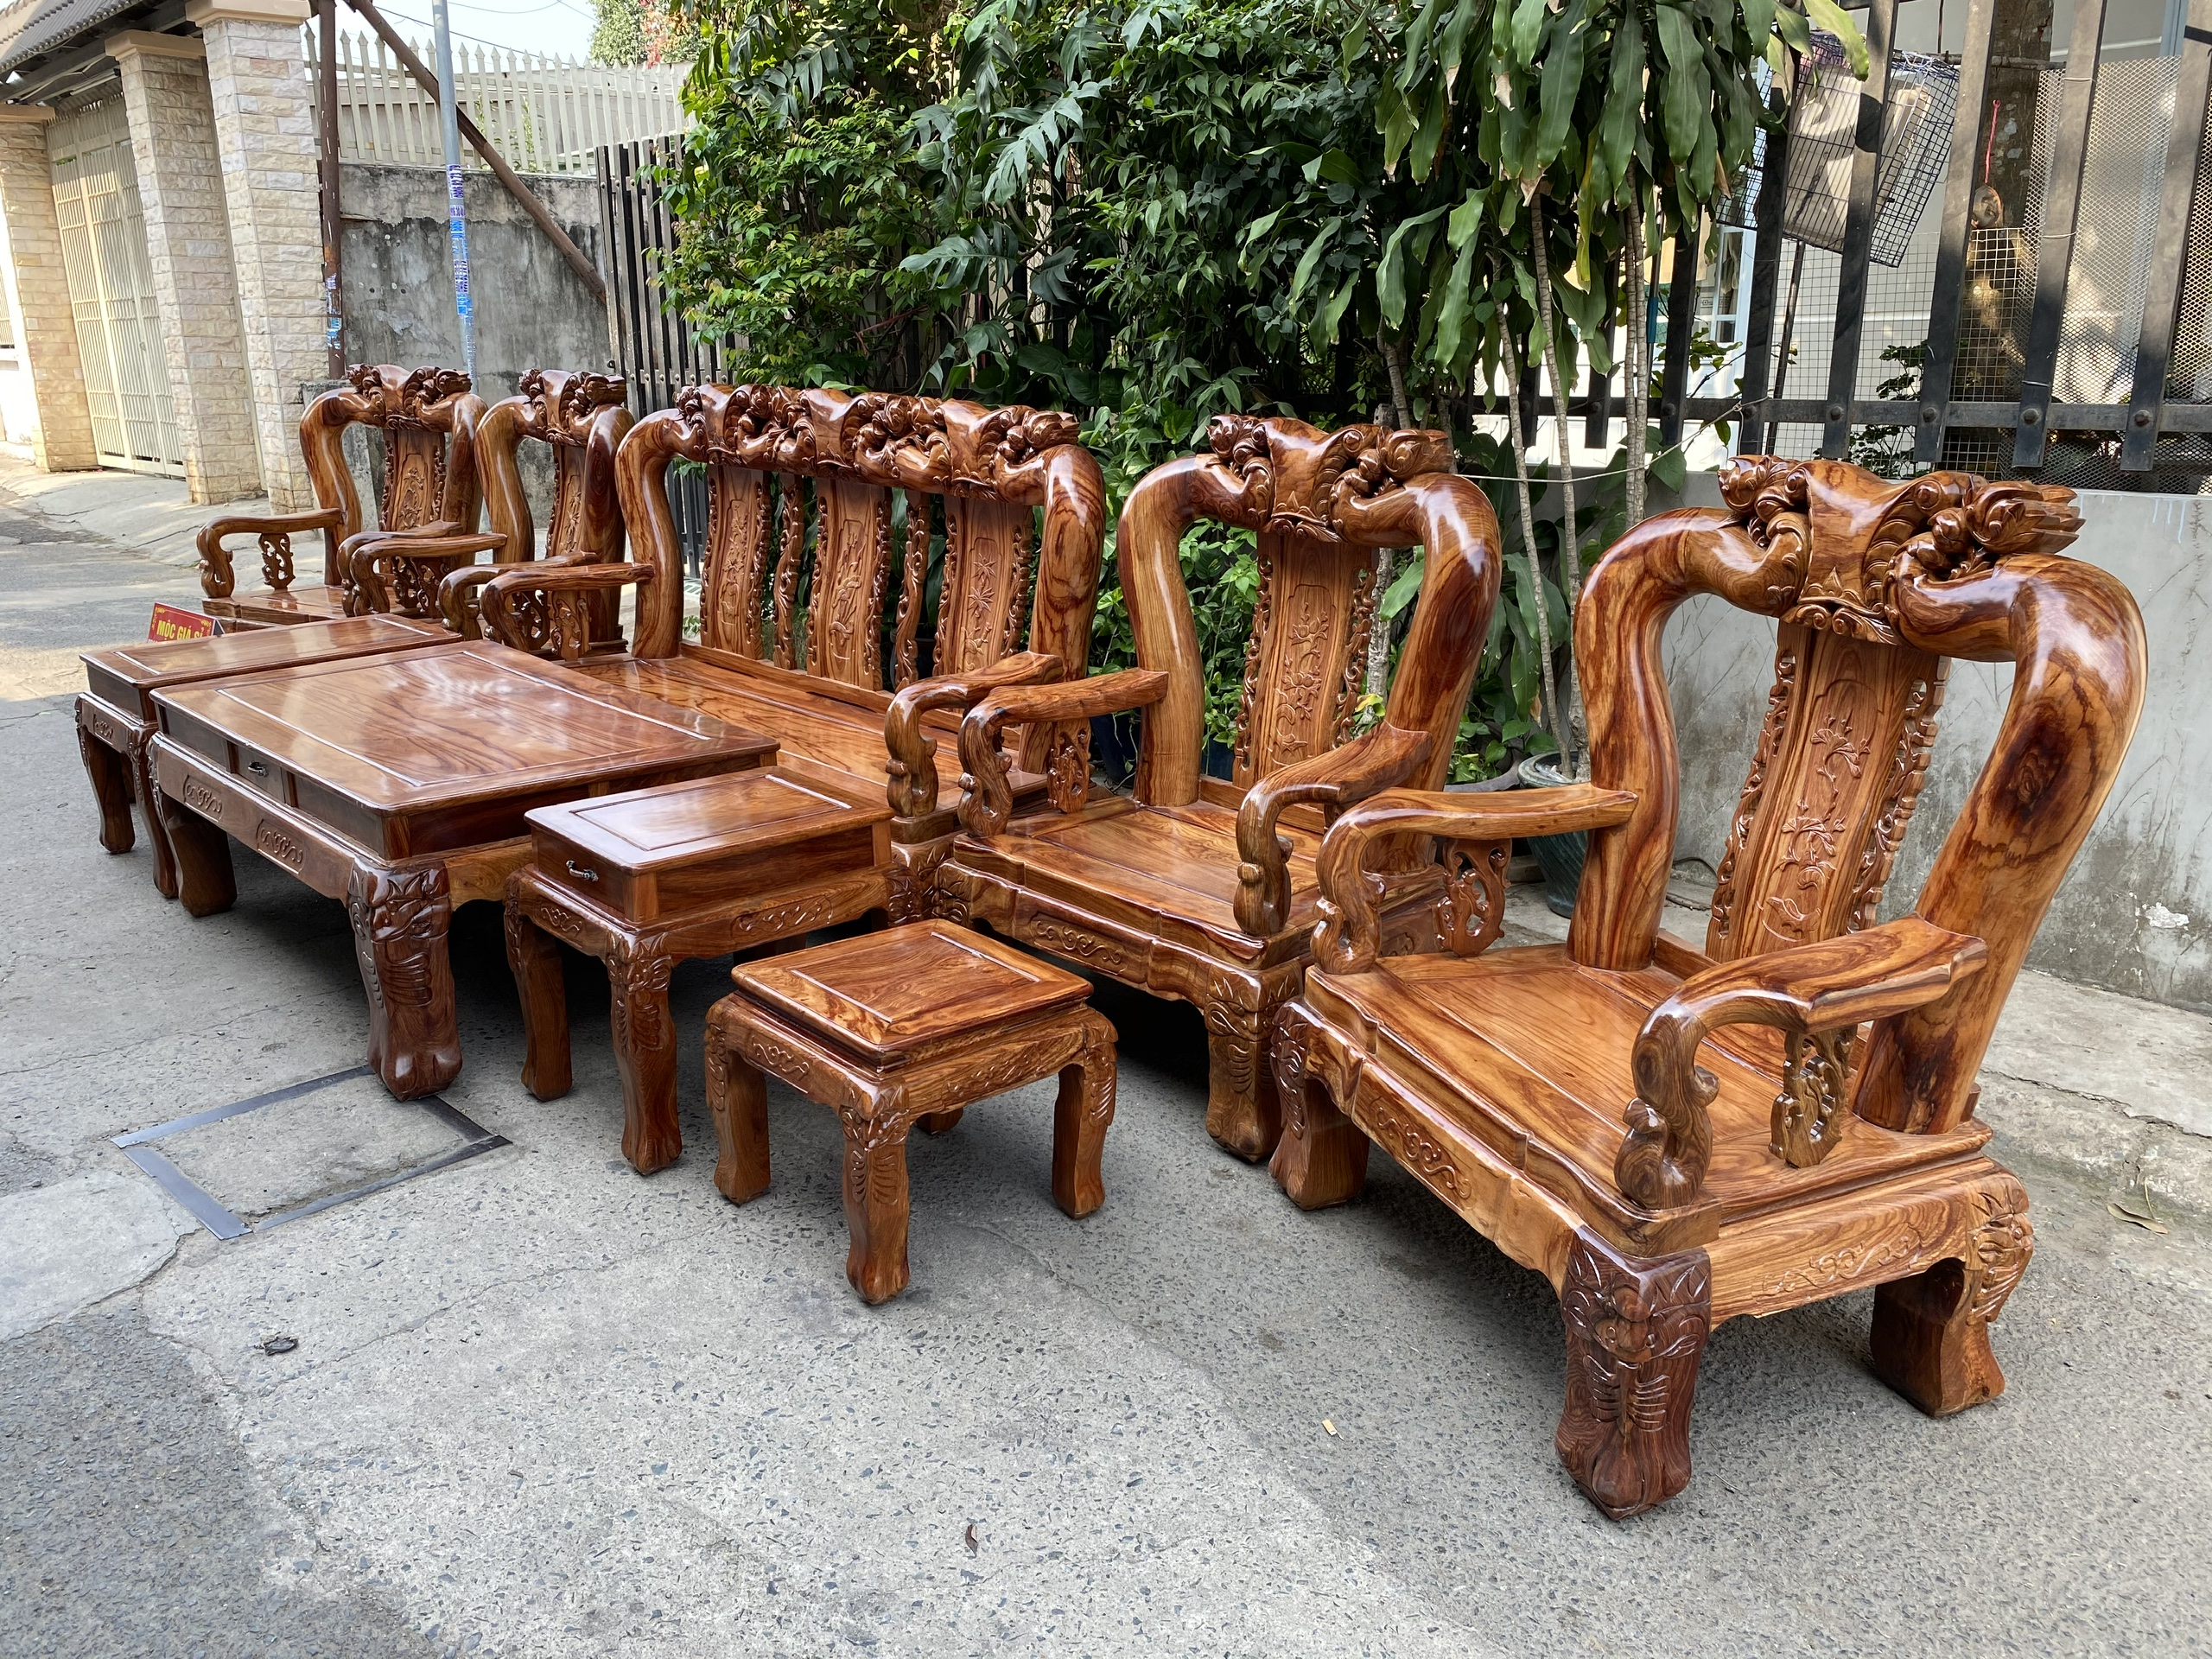 Với bộ bàn ghế tay 14 đào gỗ hương, không chỉ tôn lên phong cách truyền thống mà còn tạo sự hiện đại cho không gian phòng khách của bạn. Chất liệu gỗ hương và họa tiết đồng trên bộ bàn ghế này sẽ mang lại cảm giác sang trọng và ấm cúng. Hãy bấm vào hình ảnh để khám phá thêm nhiều hơn nhé!